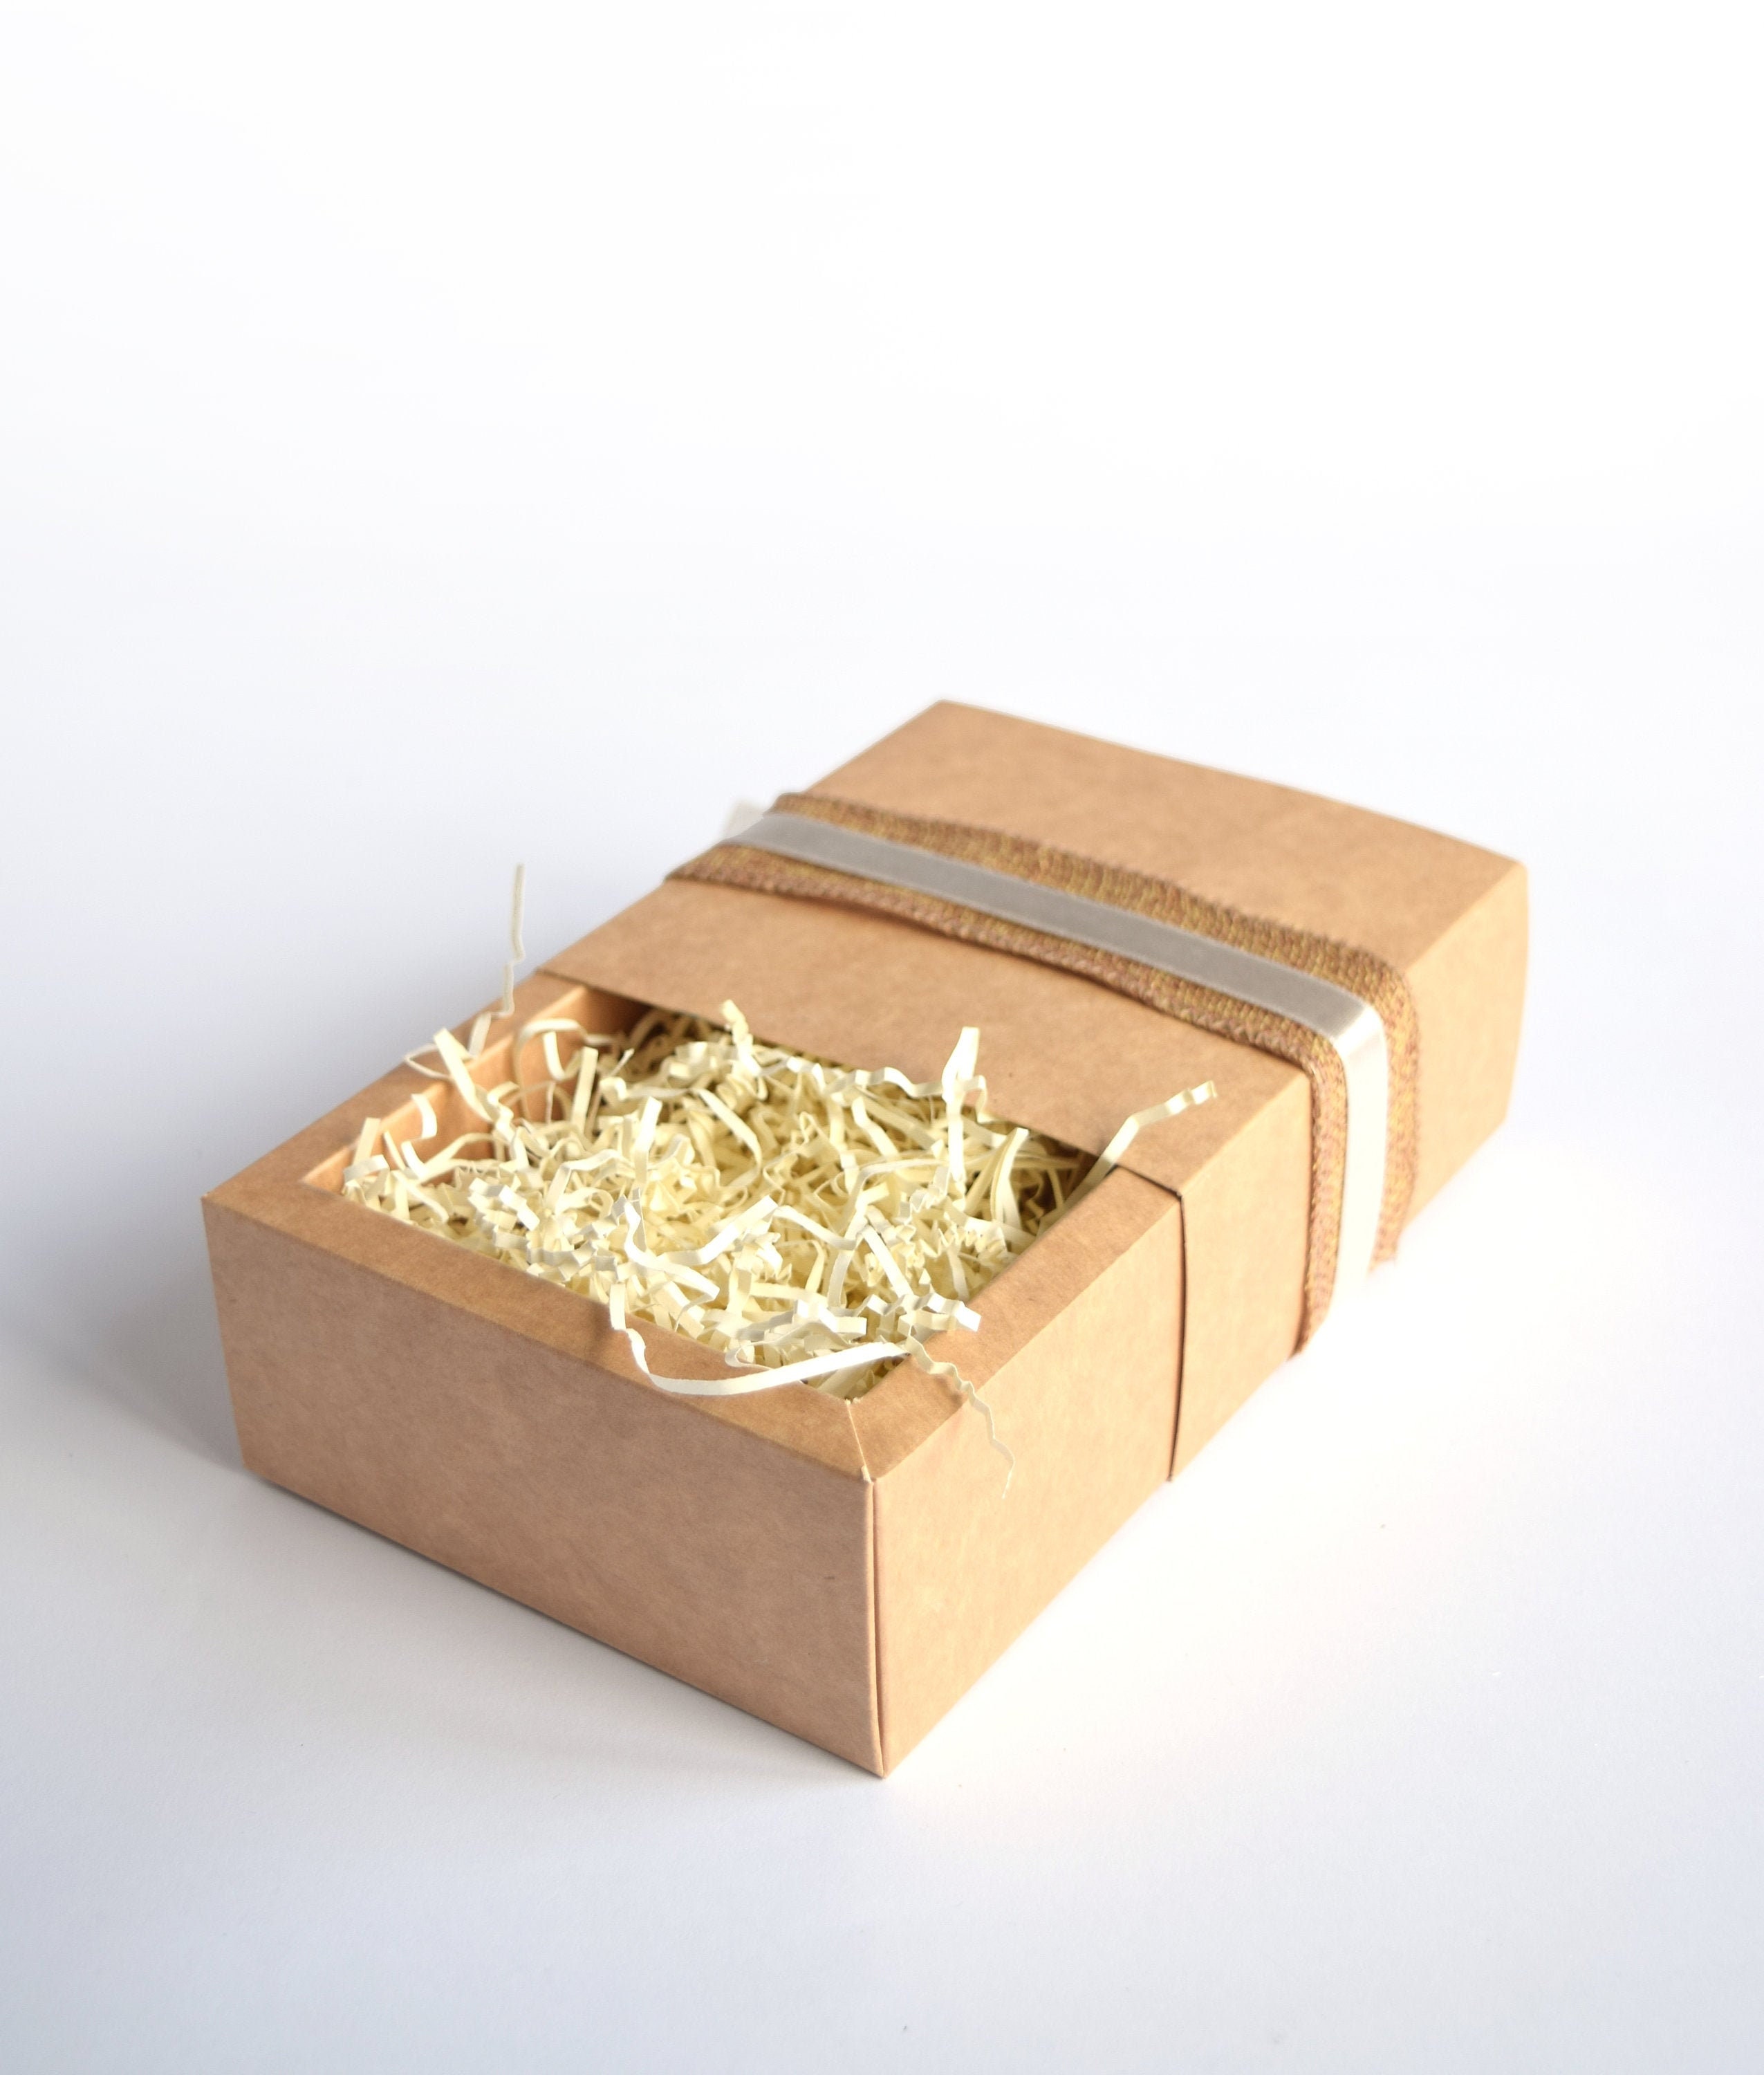 Buy Brown Kraft Paper Slide Drawer Box Packaging in Visible PVC Sleeve